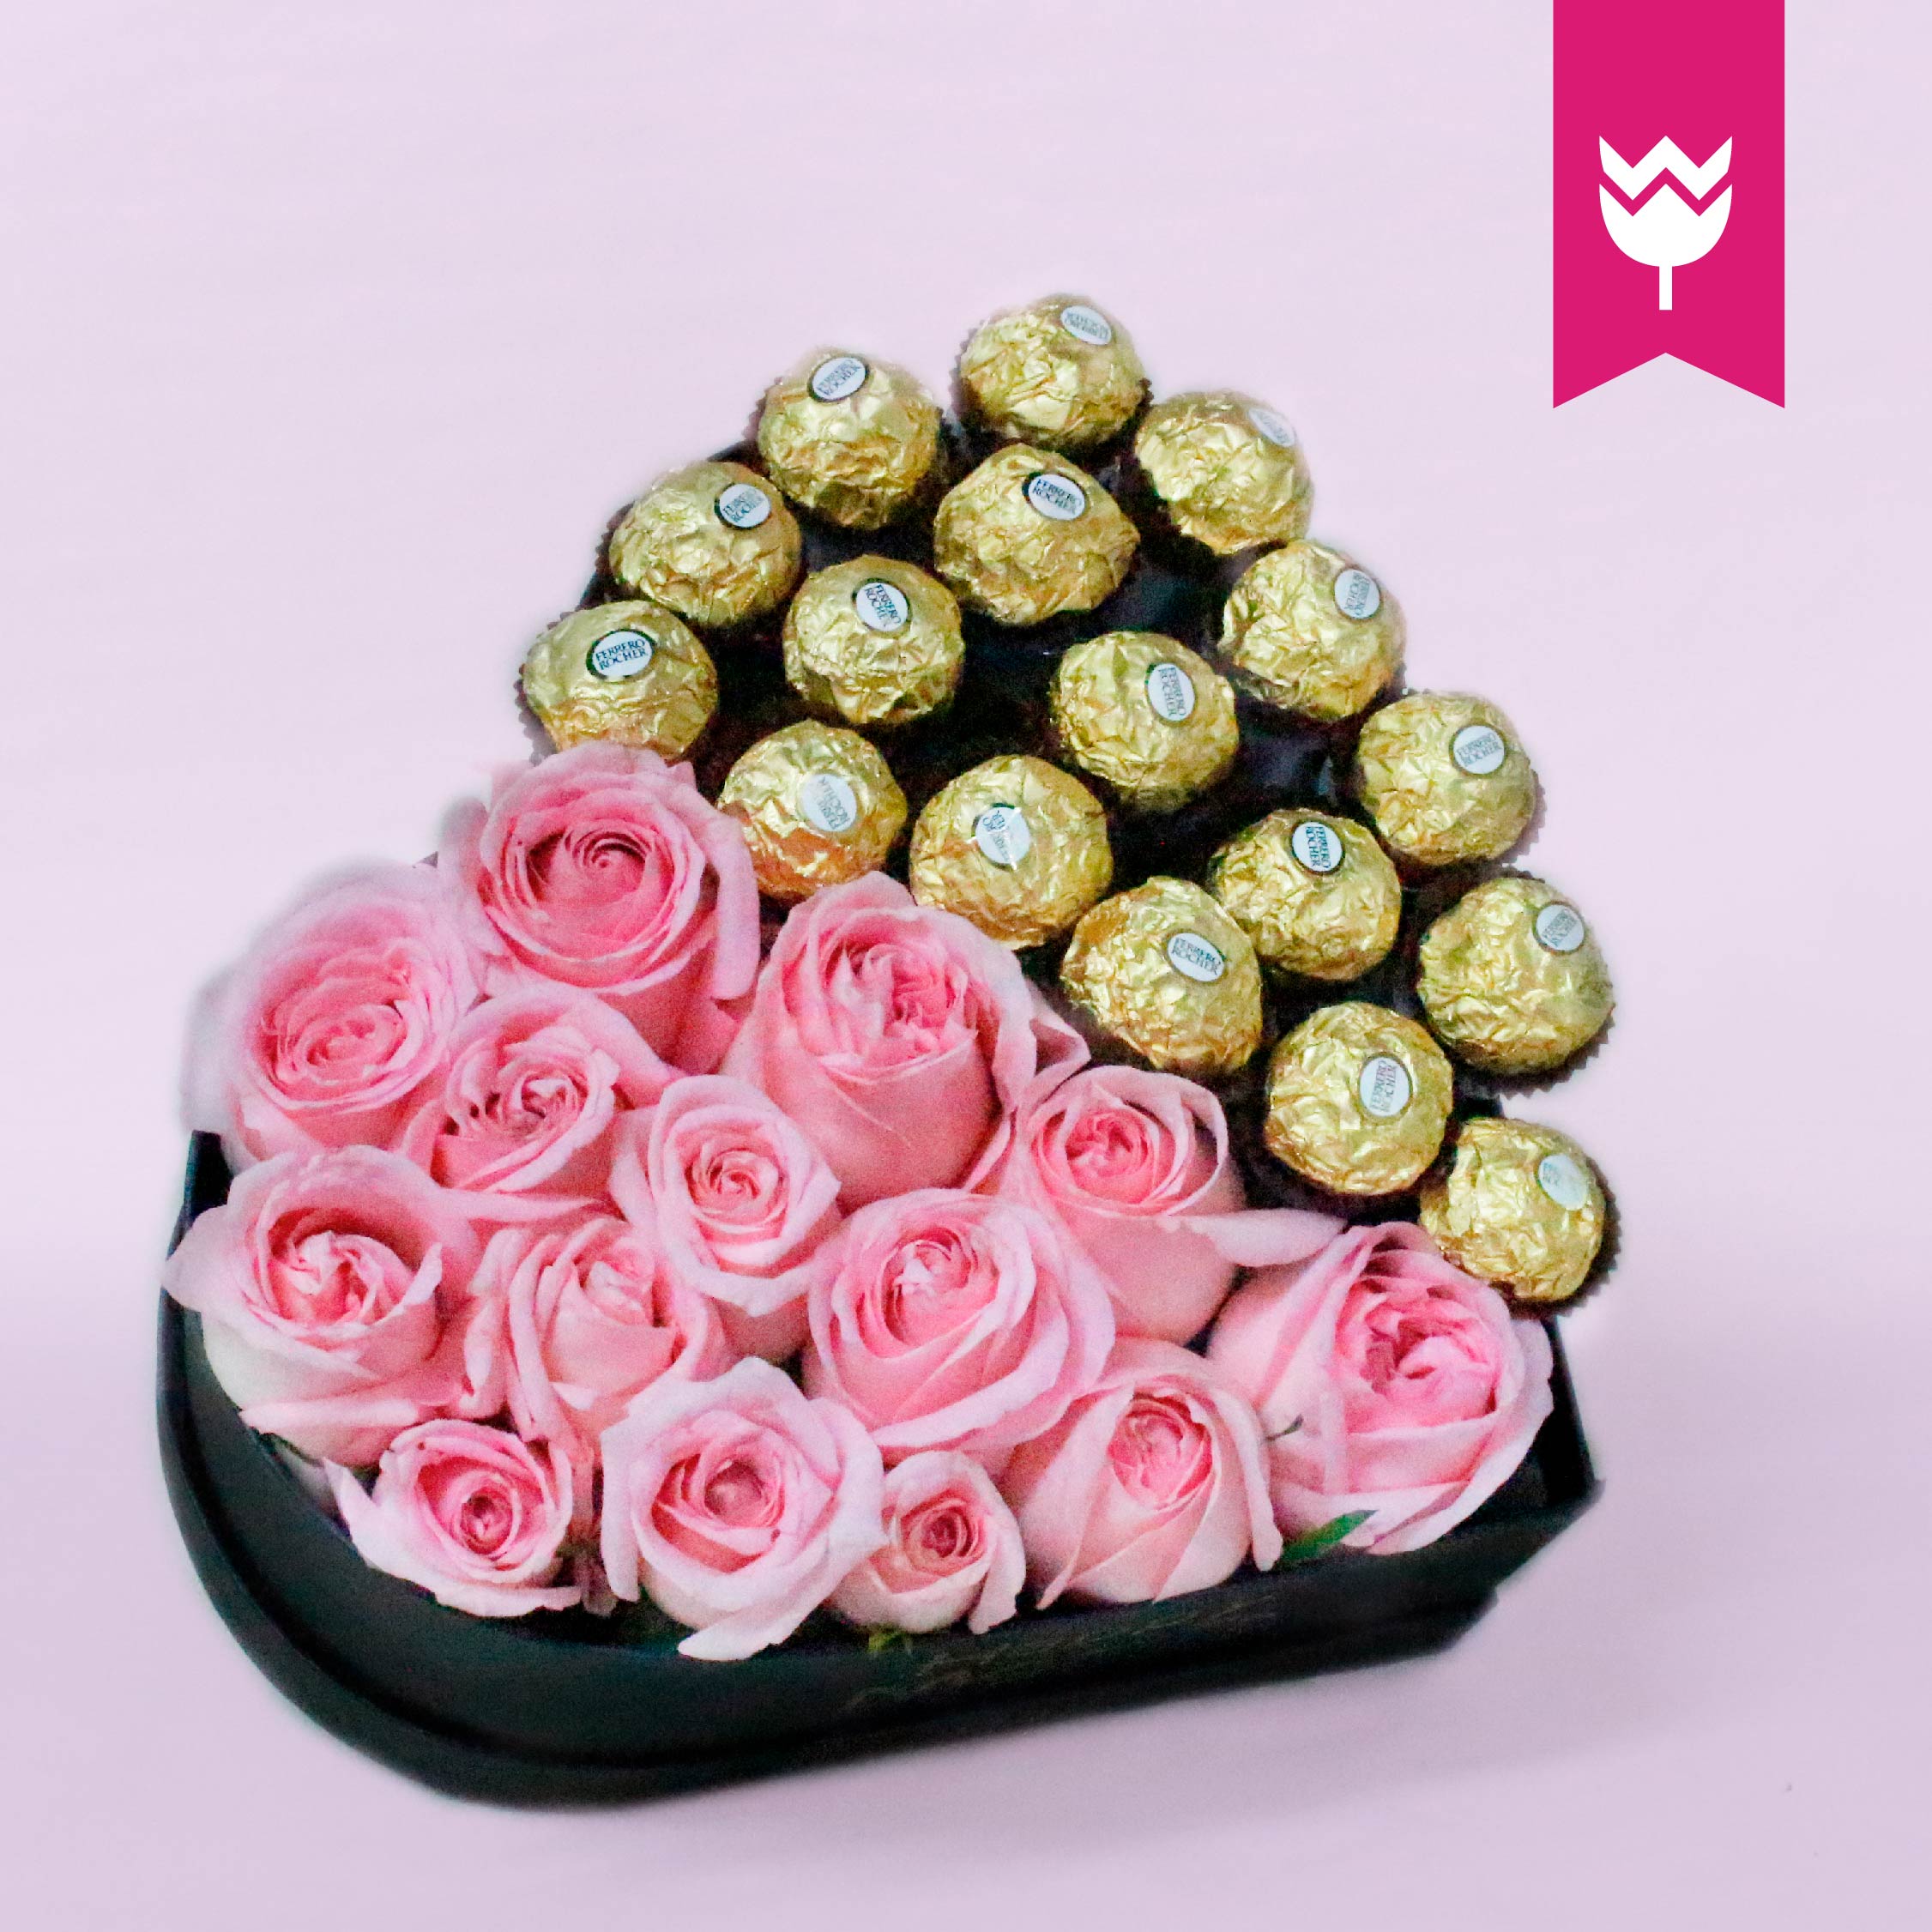 Caja Corazón con Rosas y Ferreros - Flores4U